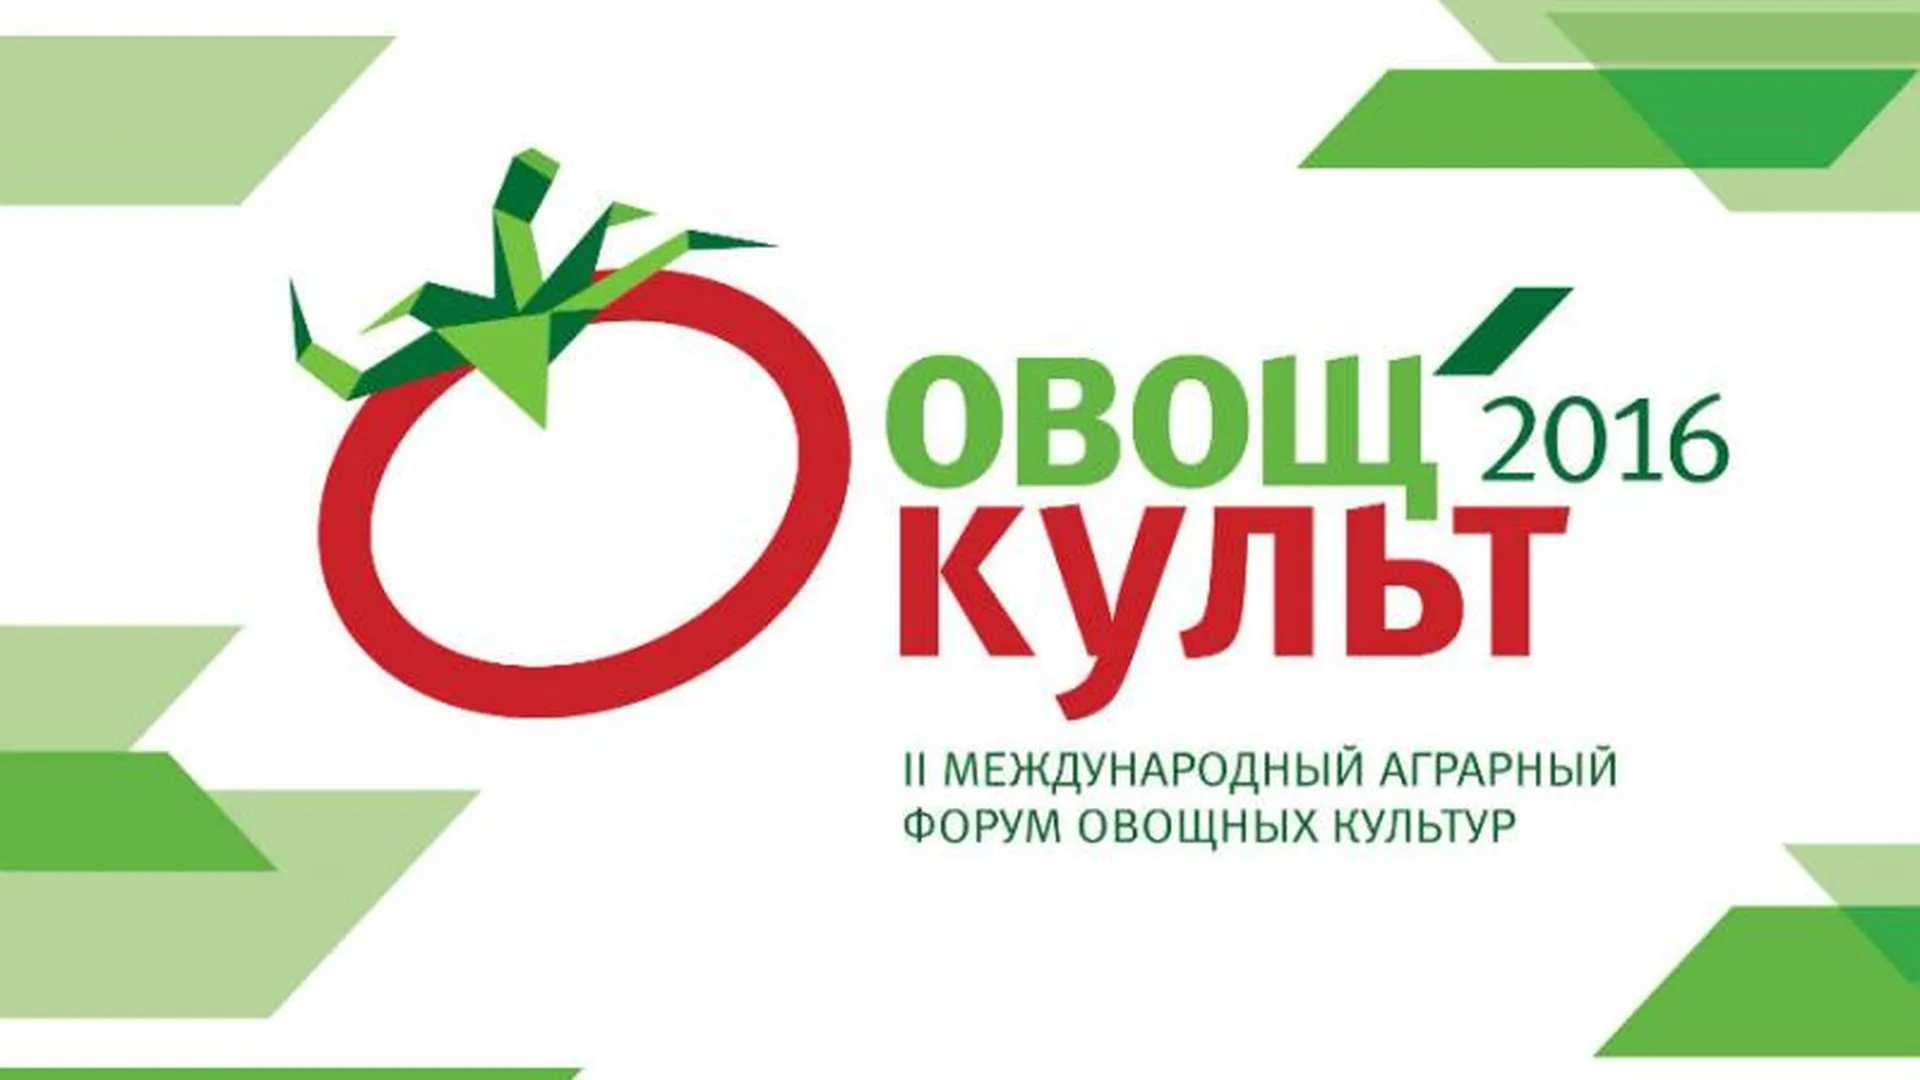 Пресс-служба форума "ОвощКульт"